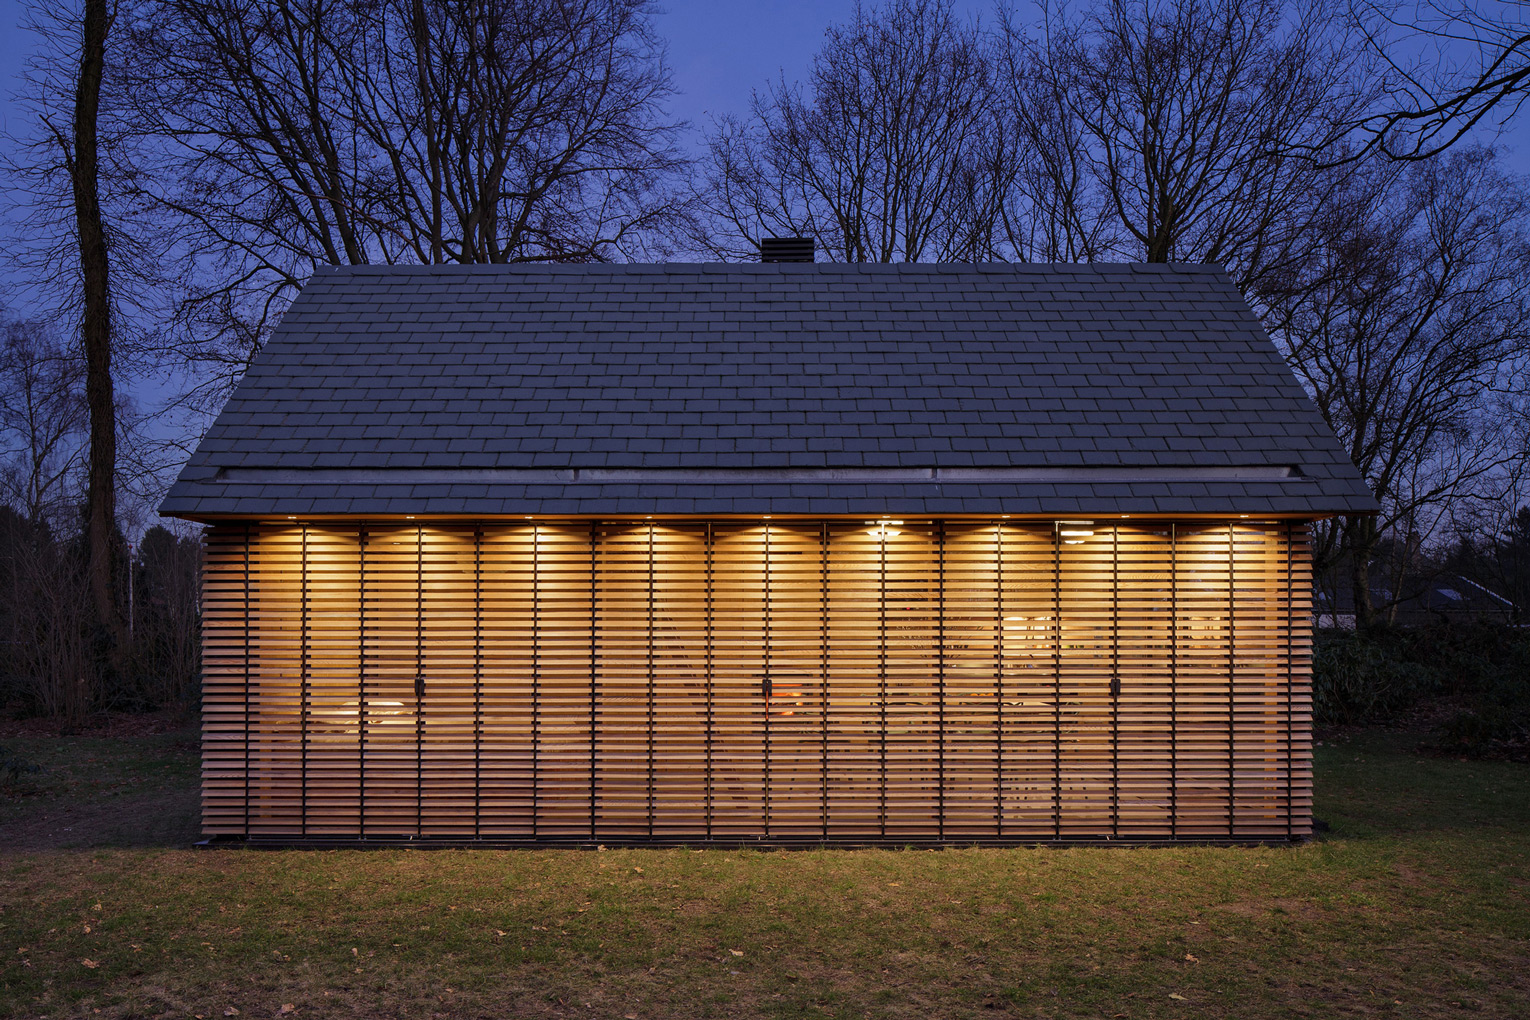 Recreationhouse / Roel van Norel + Zecc Architecten (2)